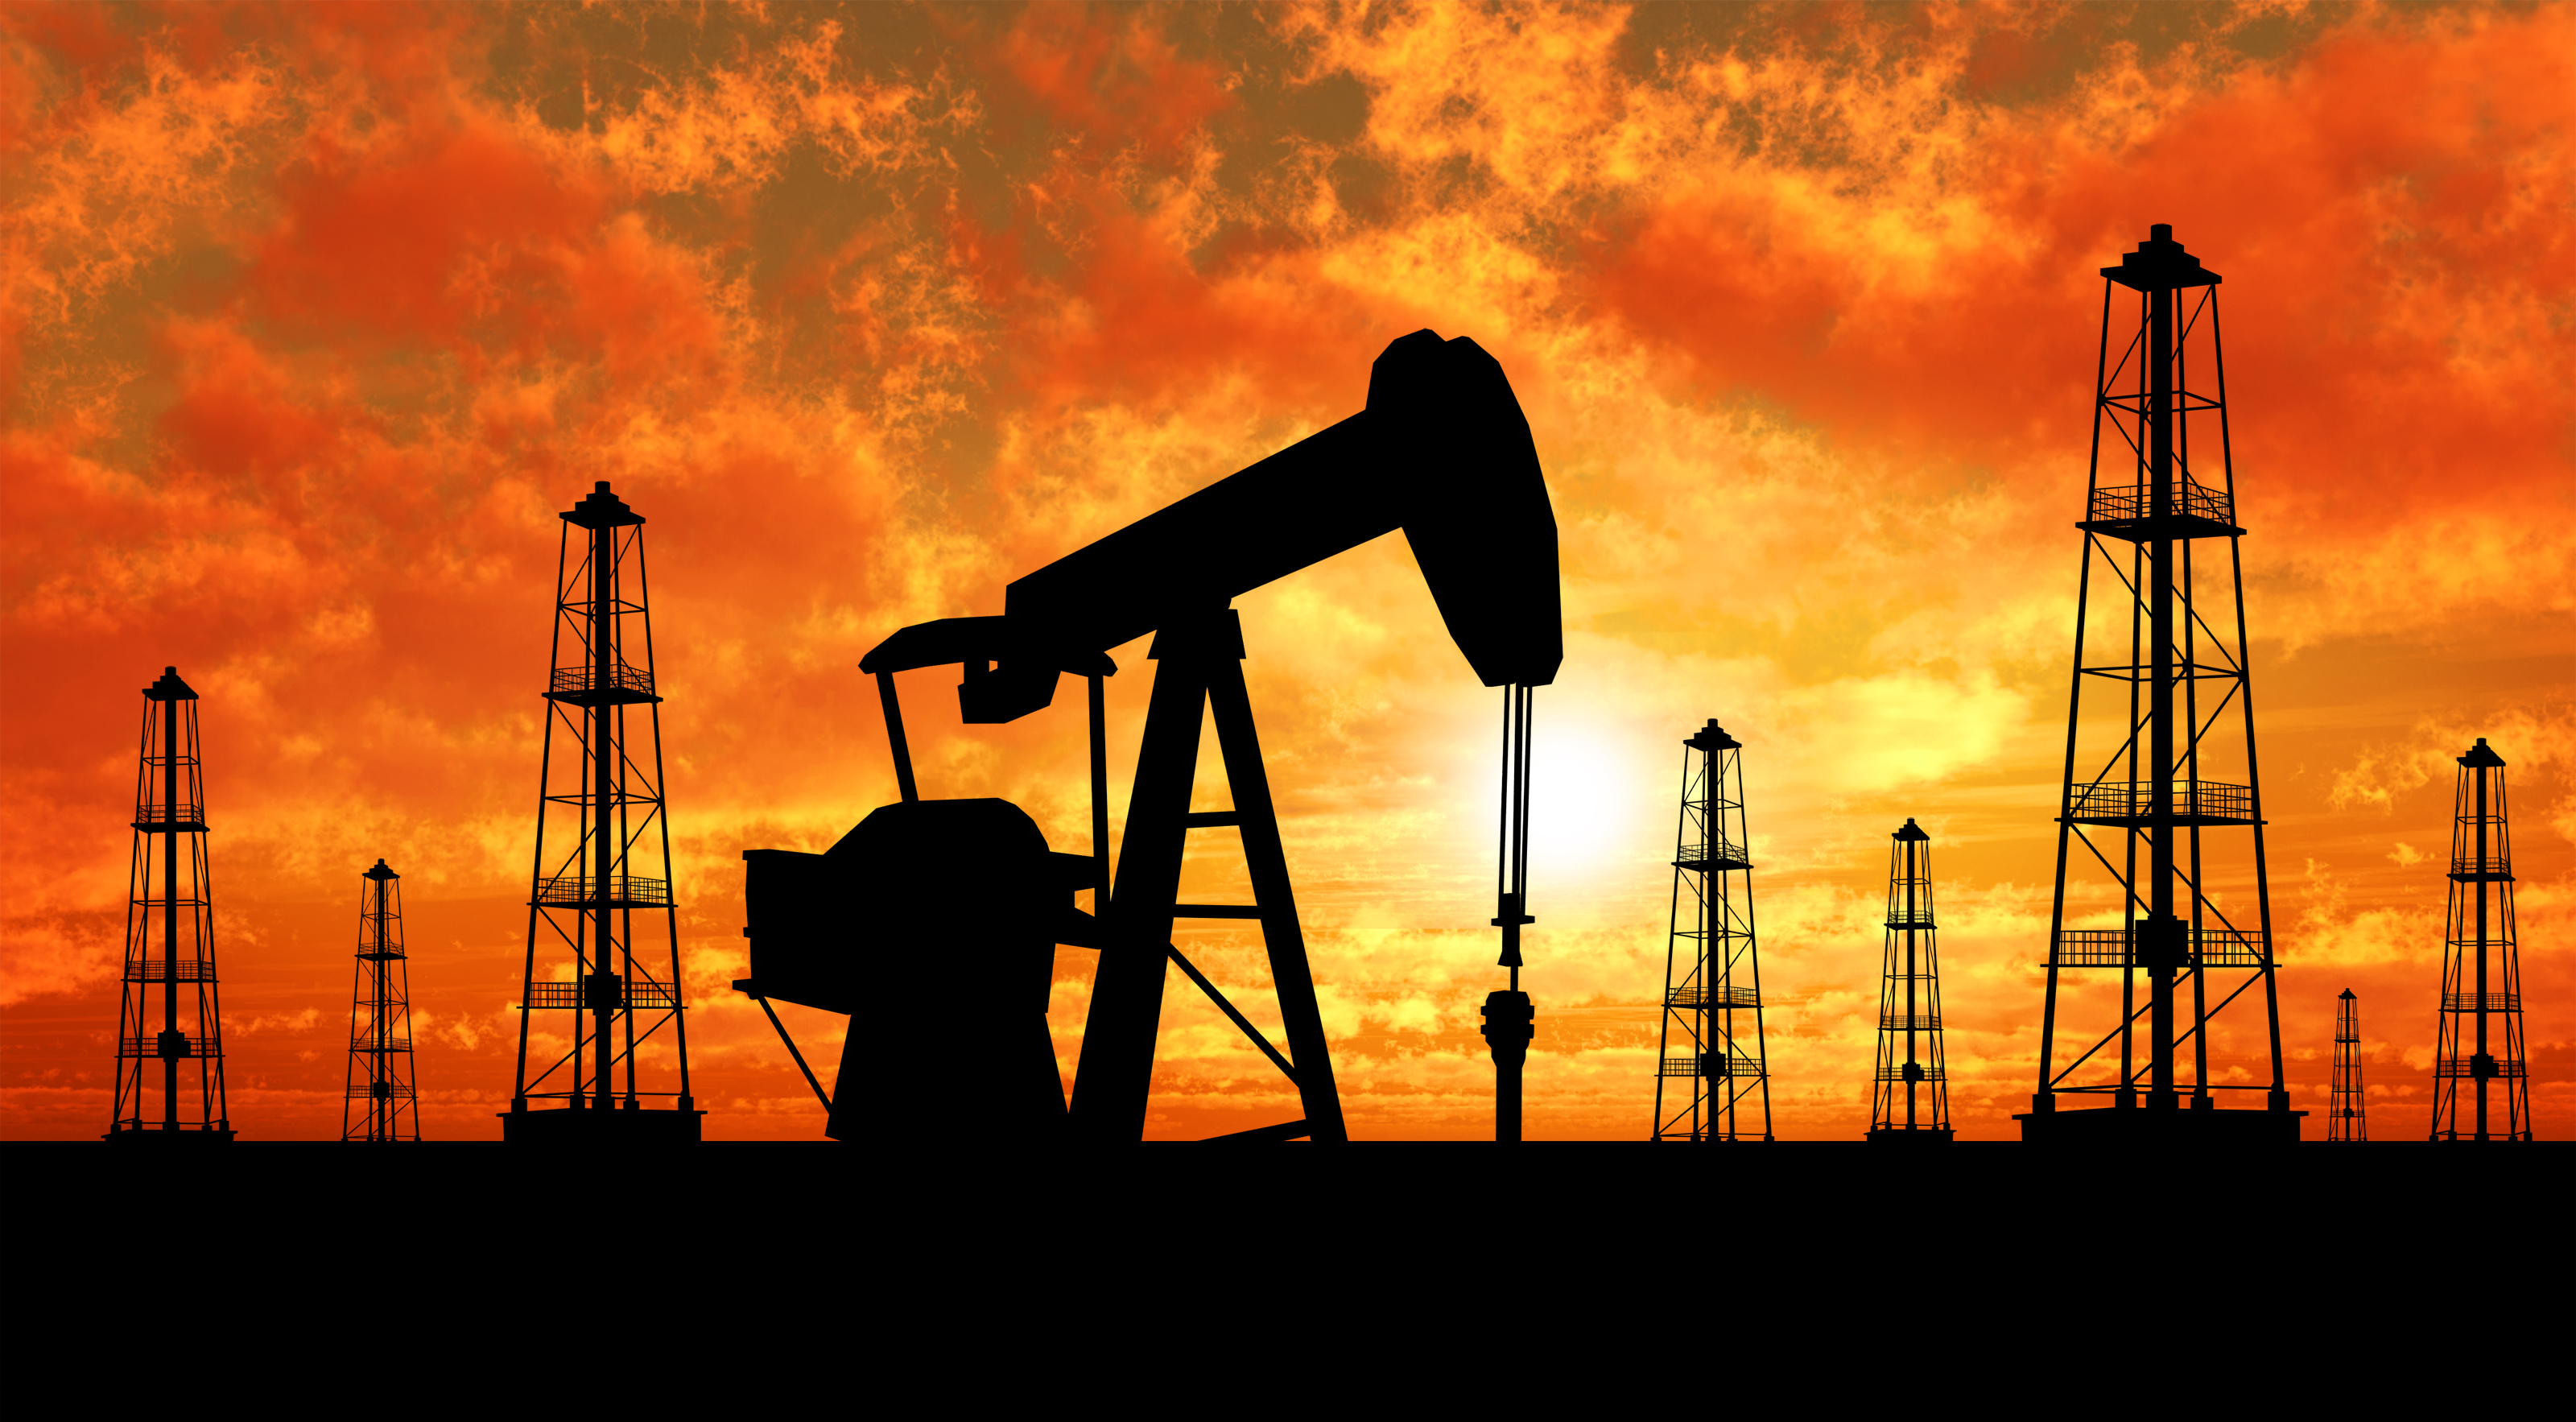 Цены на нефть выросли на фоне конфликта Саудовской Аравии и Ирана